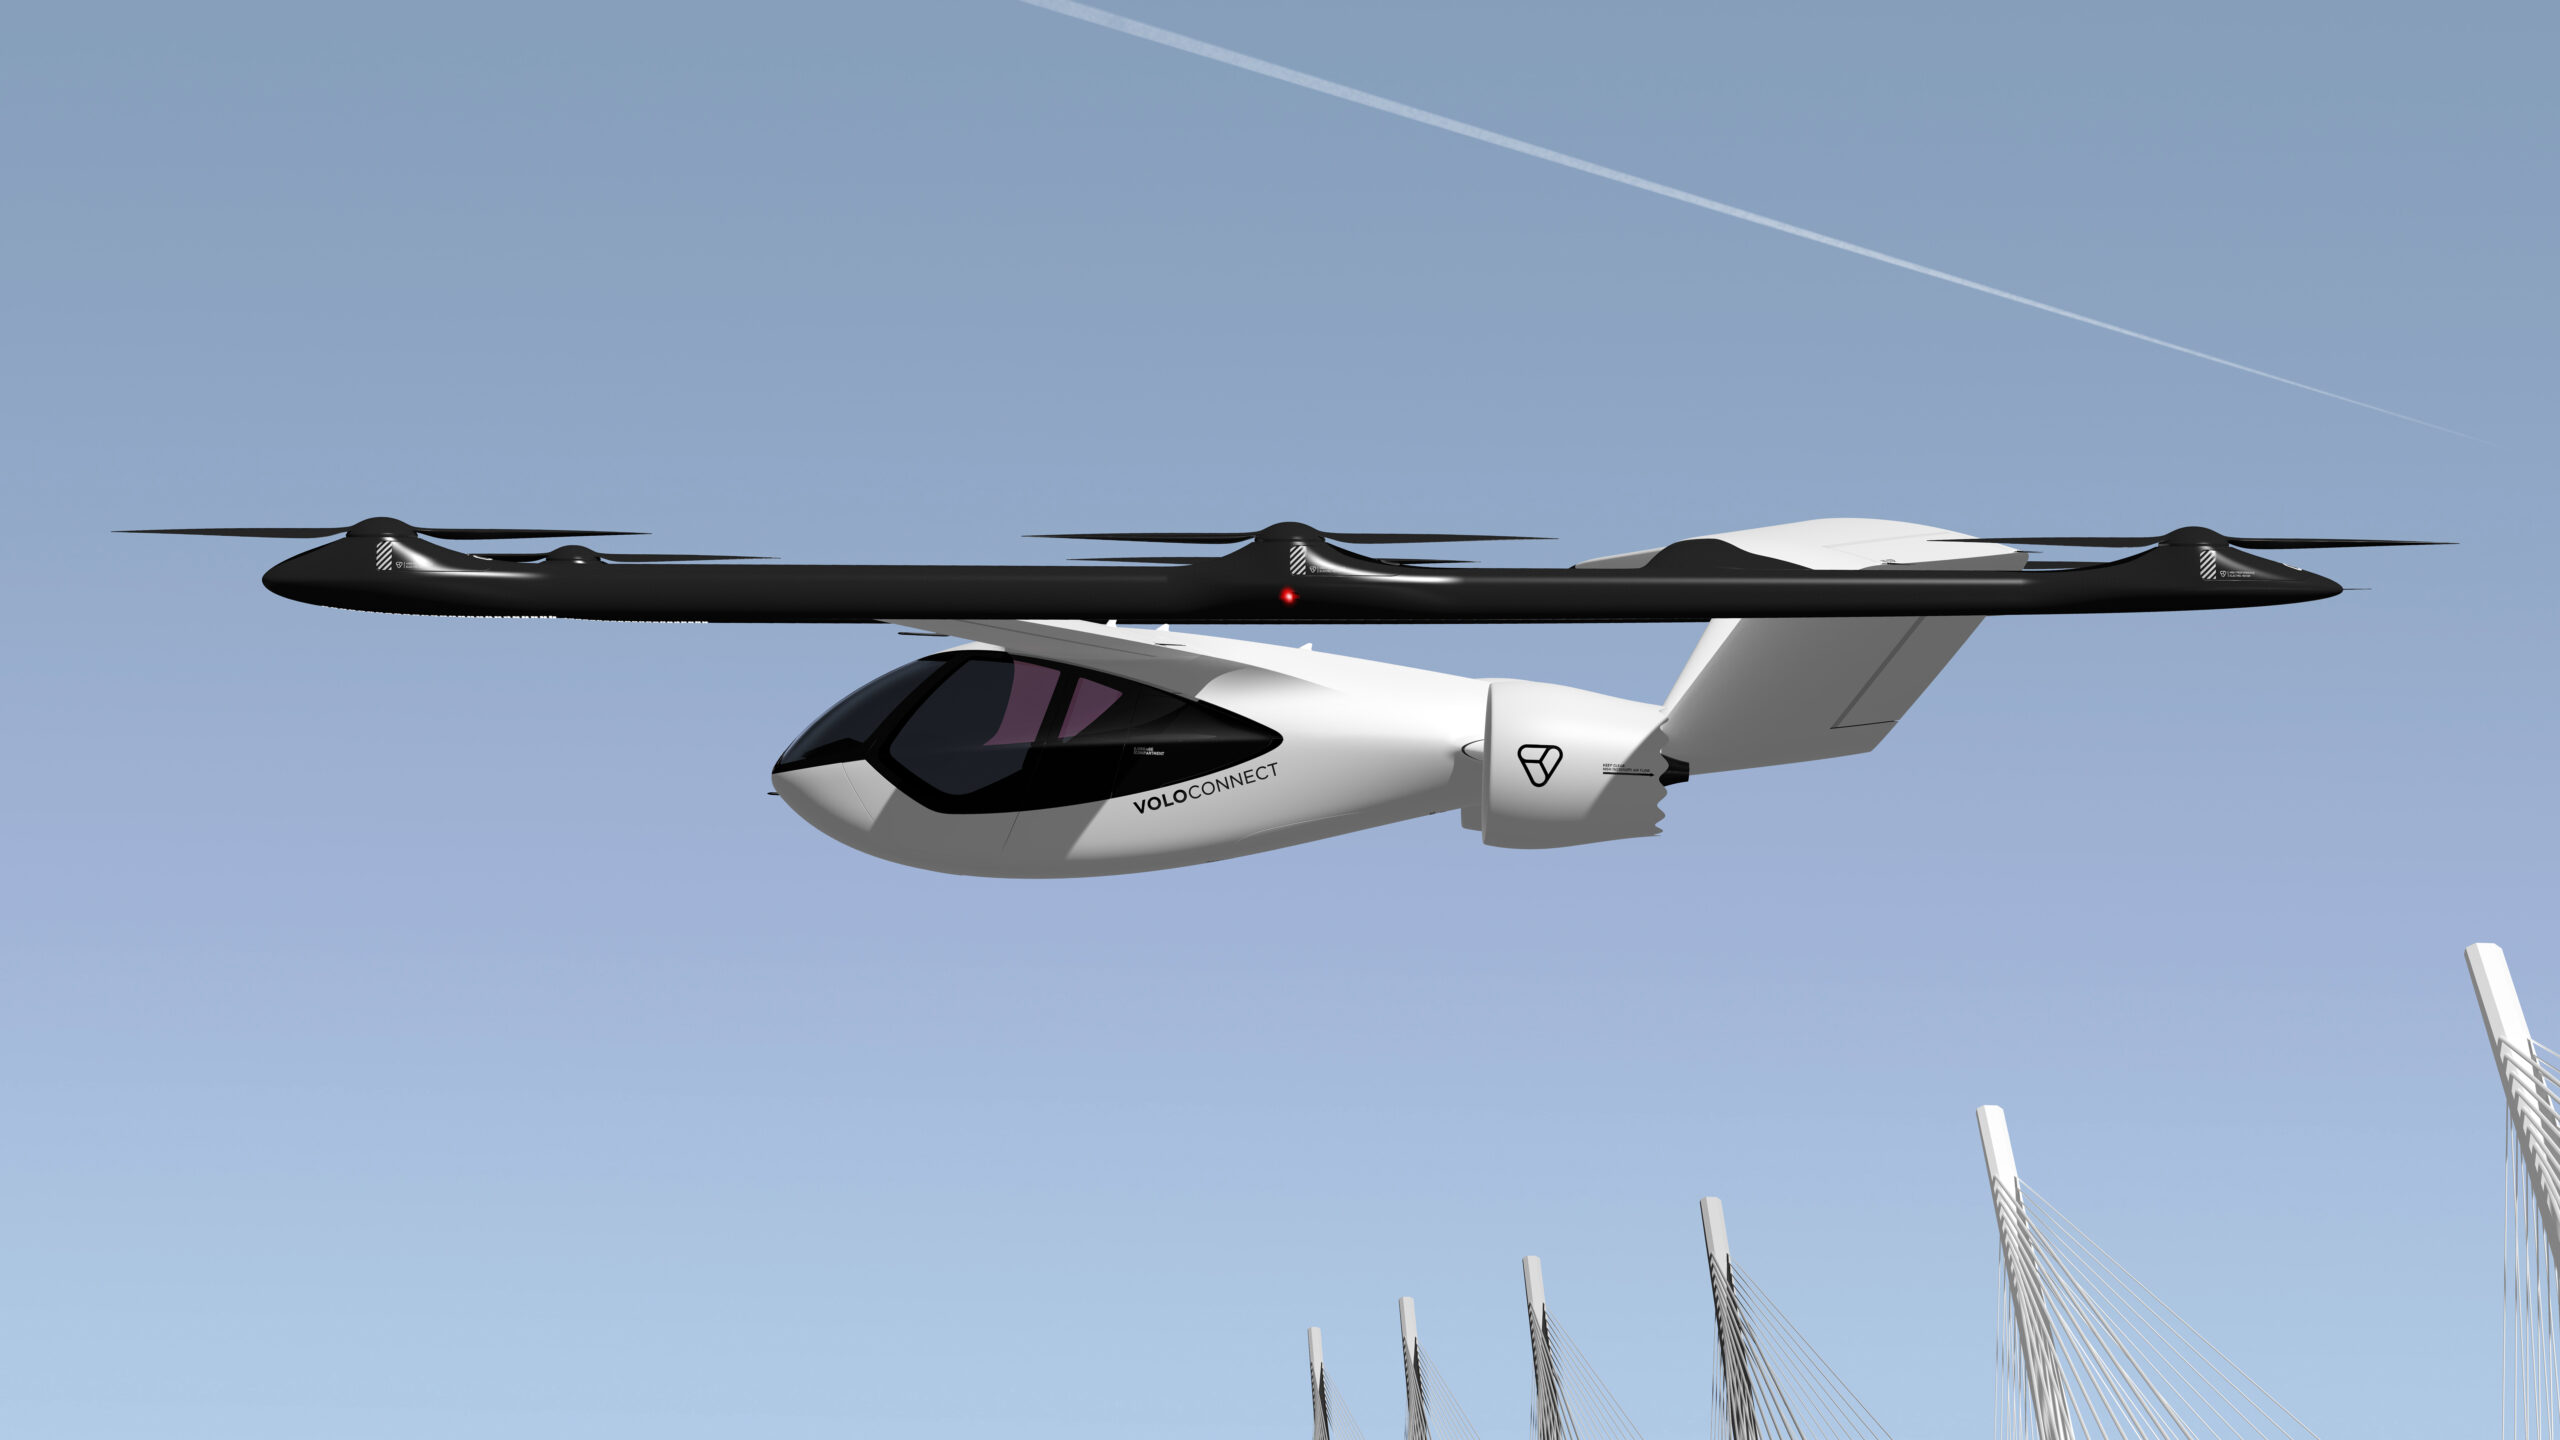 Új, nagyobb hatótávolságú légitaxit mutatott be a Volocopter